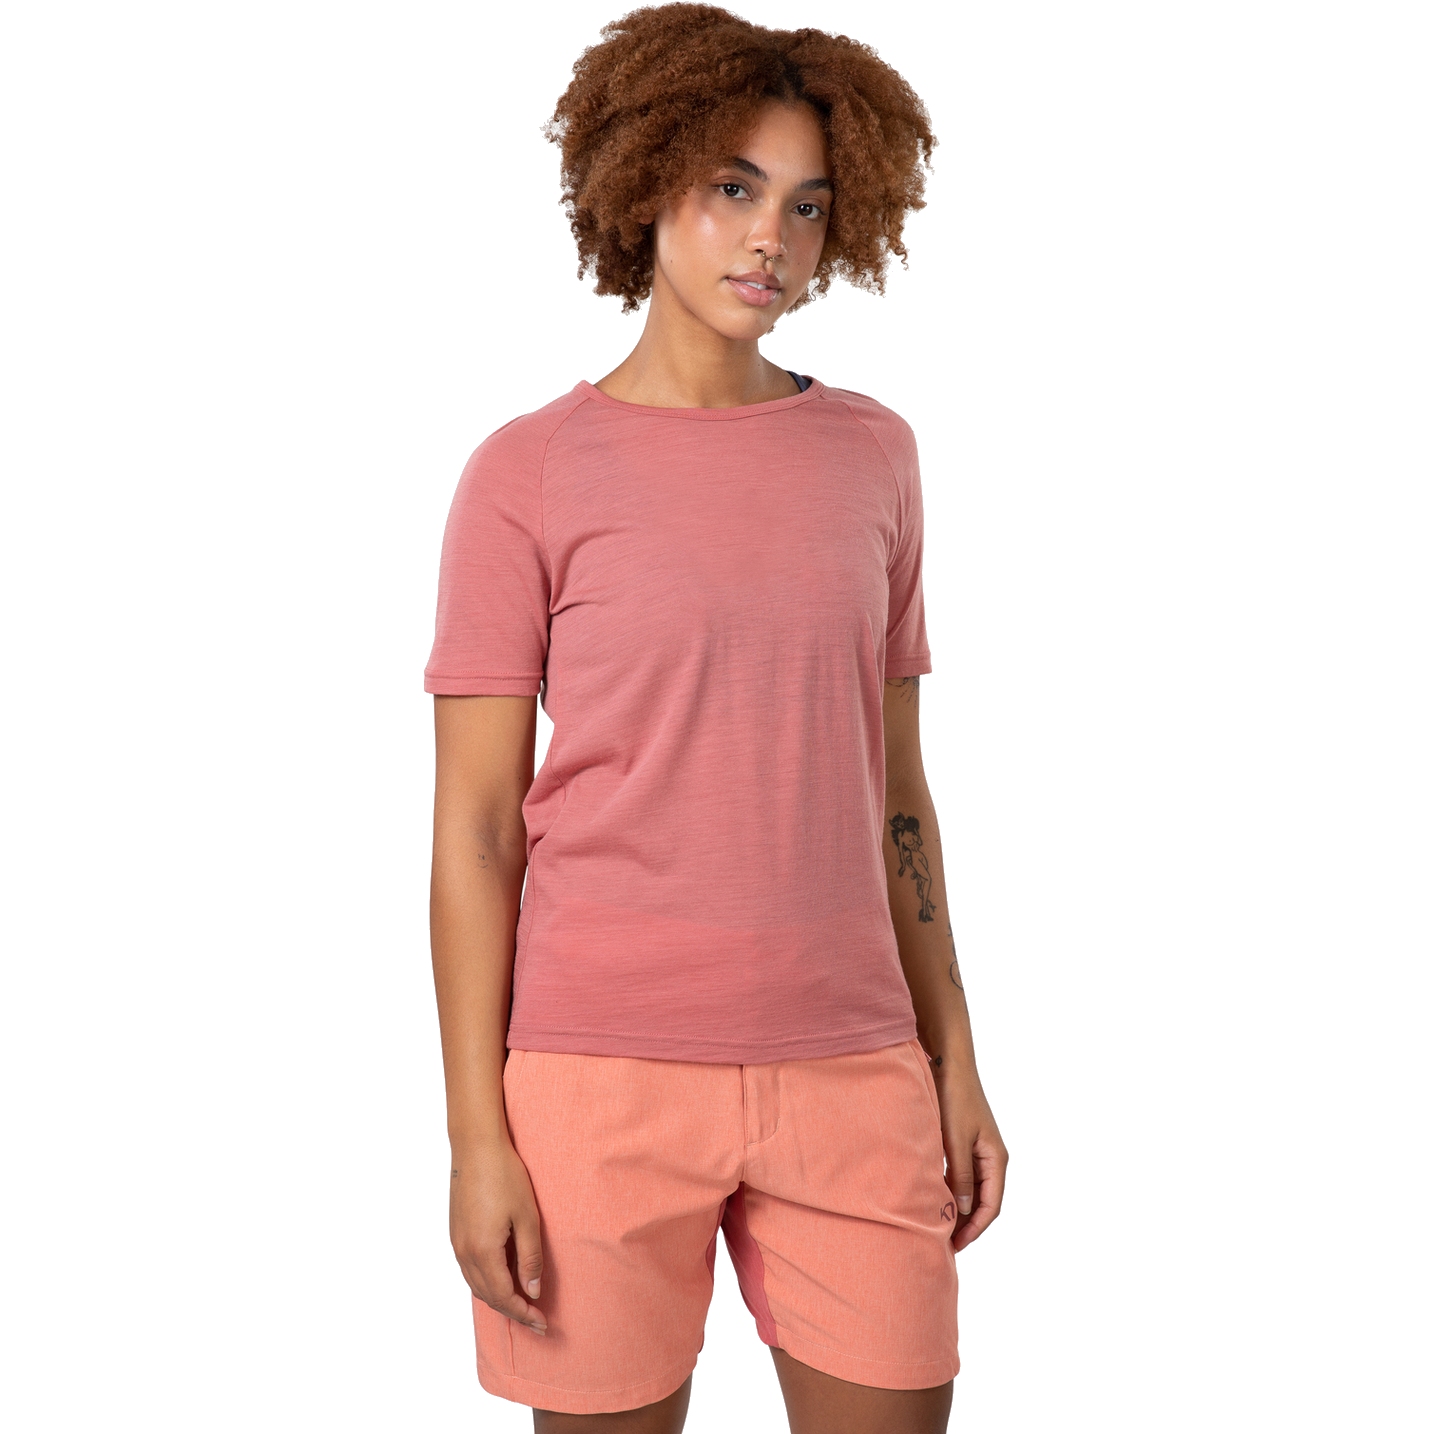 Productfoto van Kari Traa Sanne Wool T-Shirt Dames - dark dusty orange pink